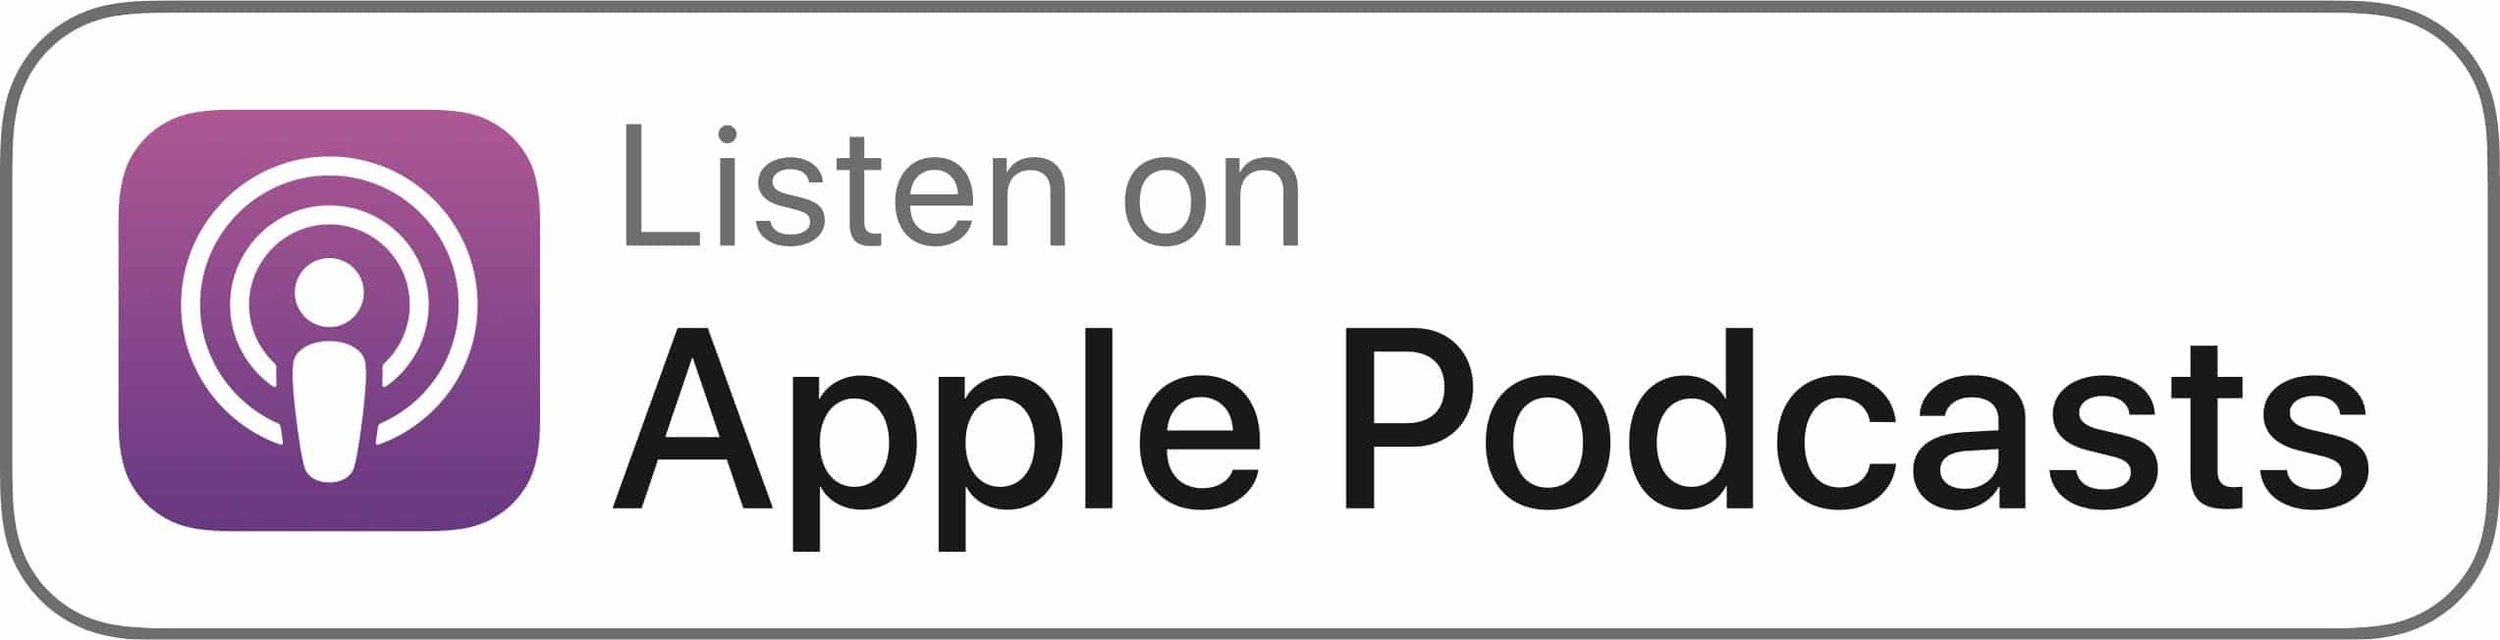 Apple Podcasts (Copy) (Copy) (Copy) (Copy) (Copy) (Copy) (Copy)